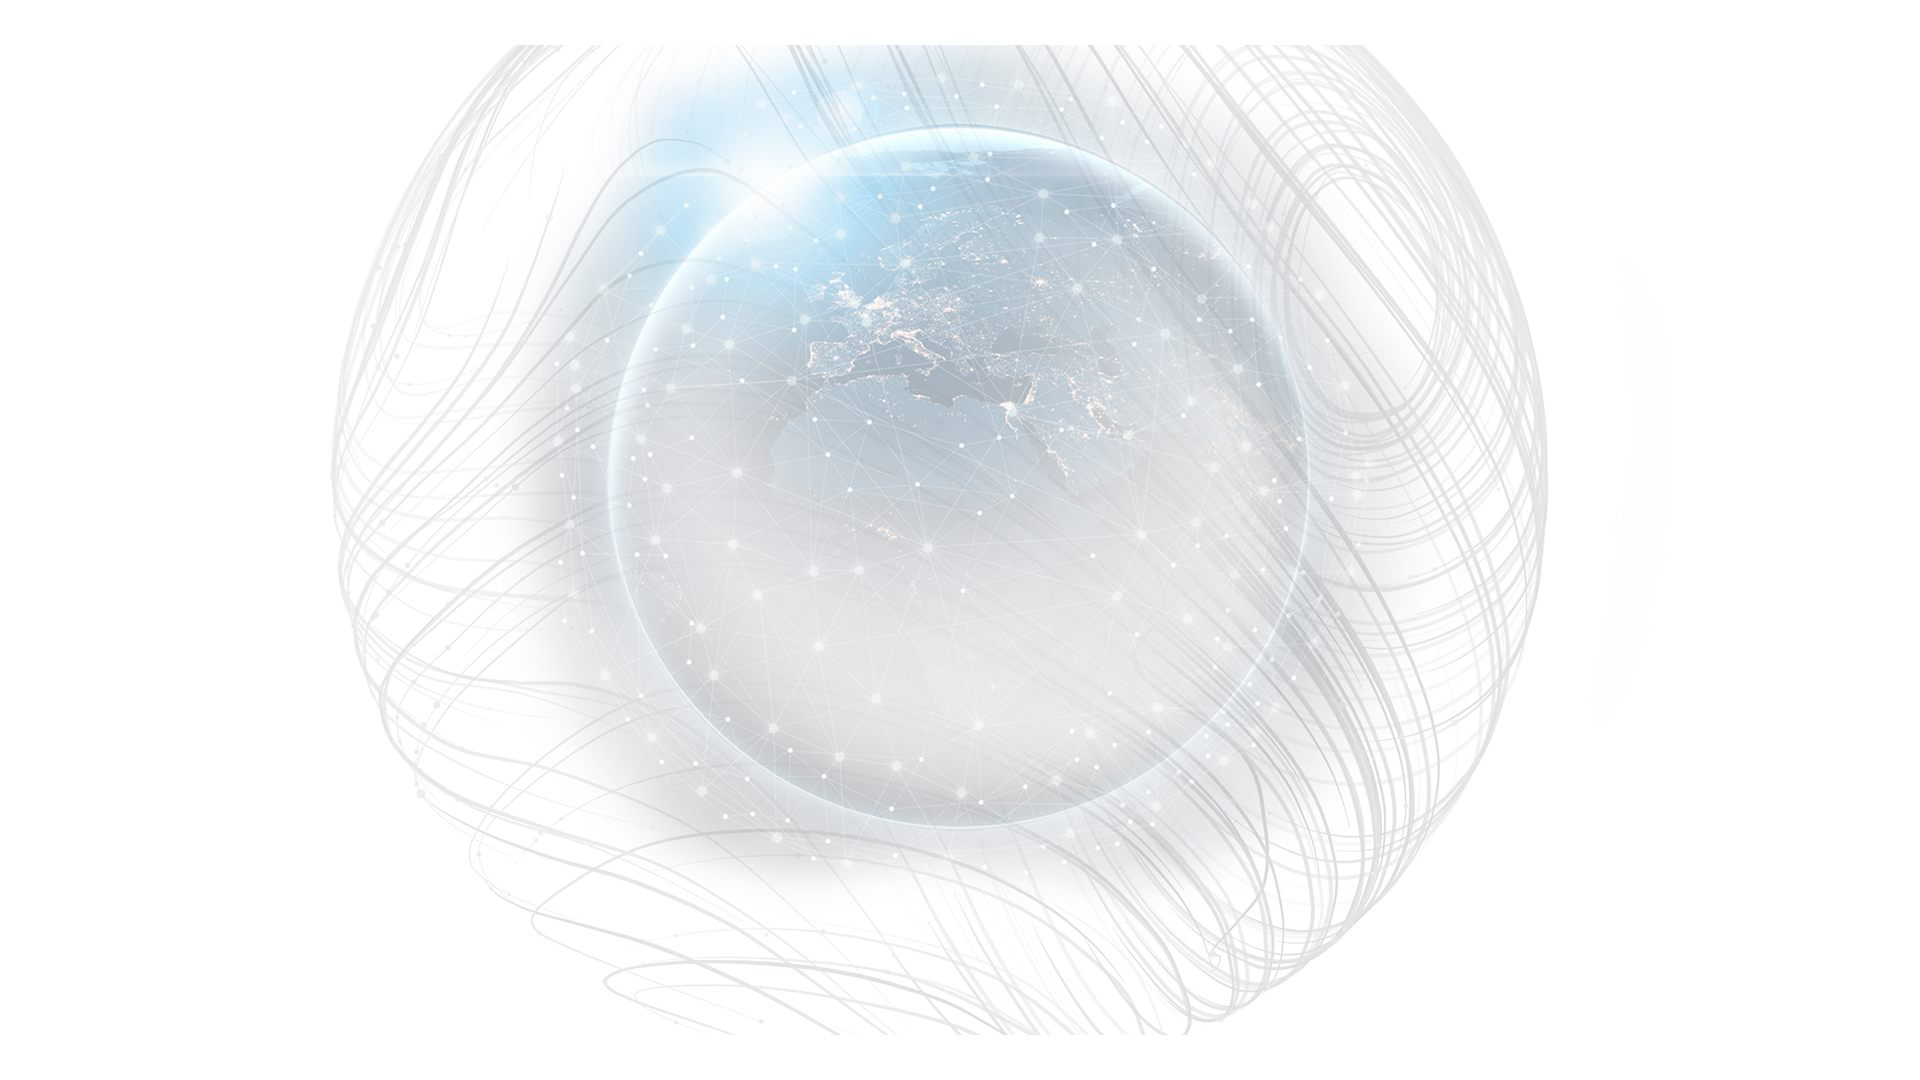 Bild von einer Weltkugel mit Linien in Graustufen und bläulichem Licht